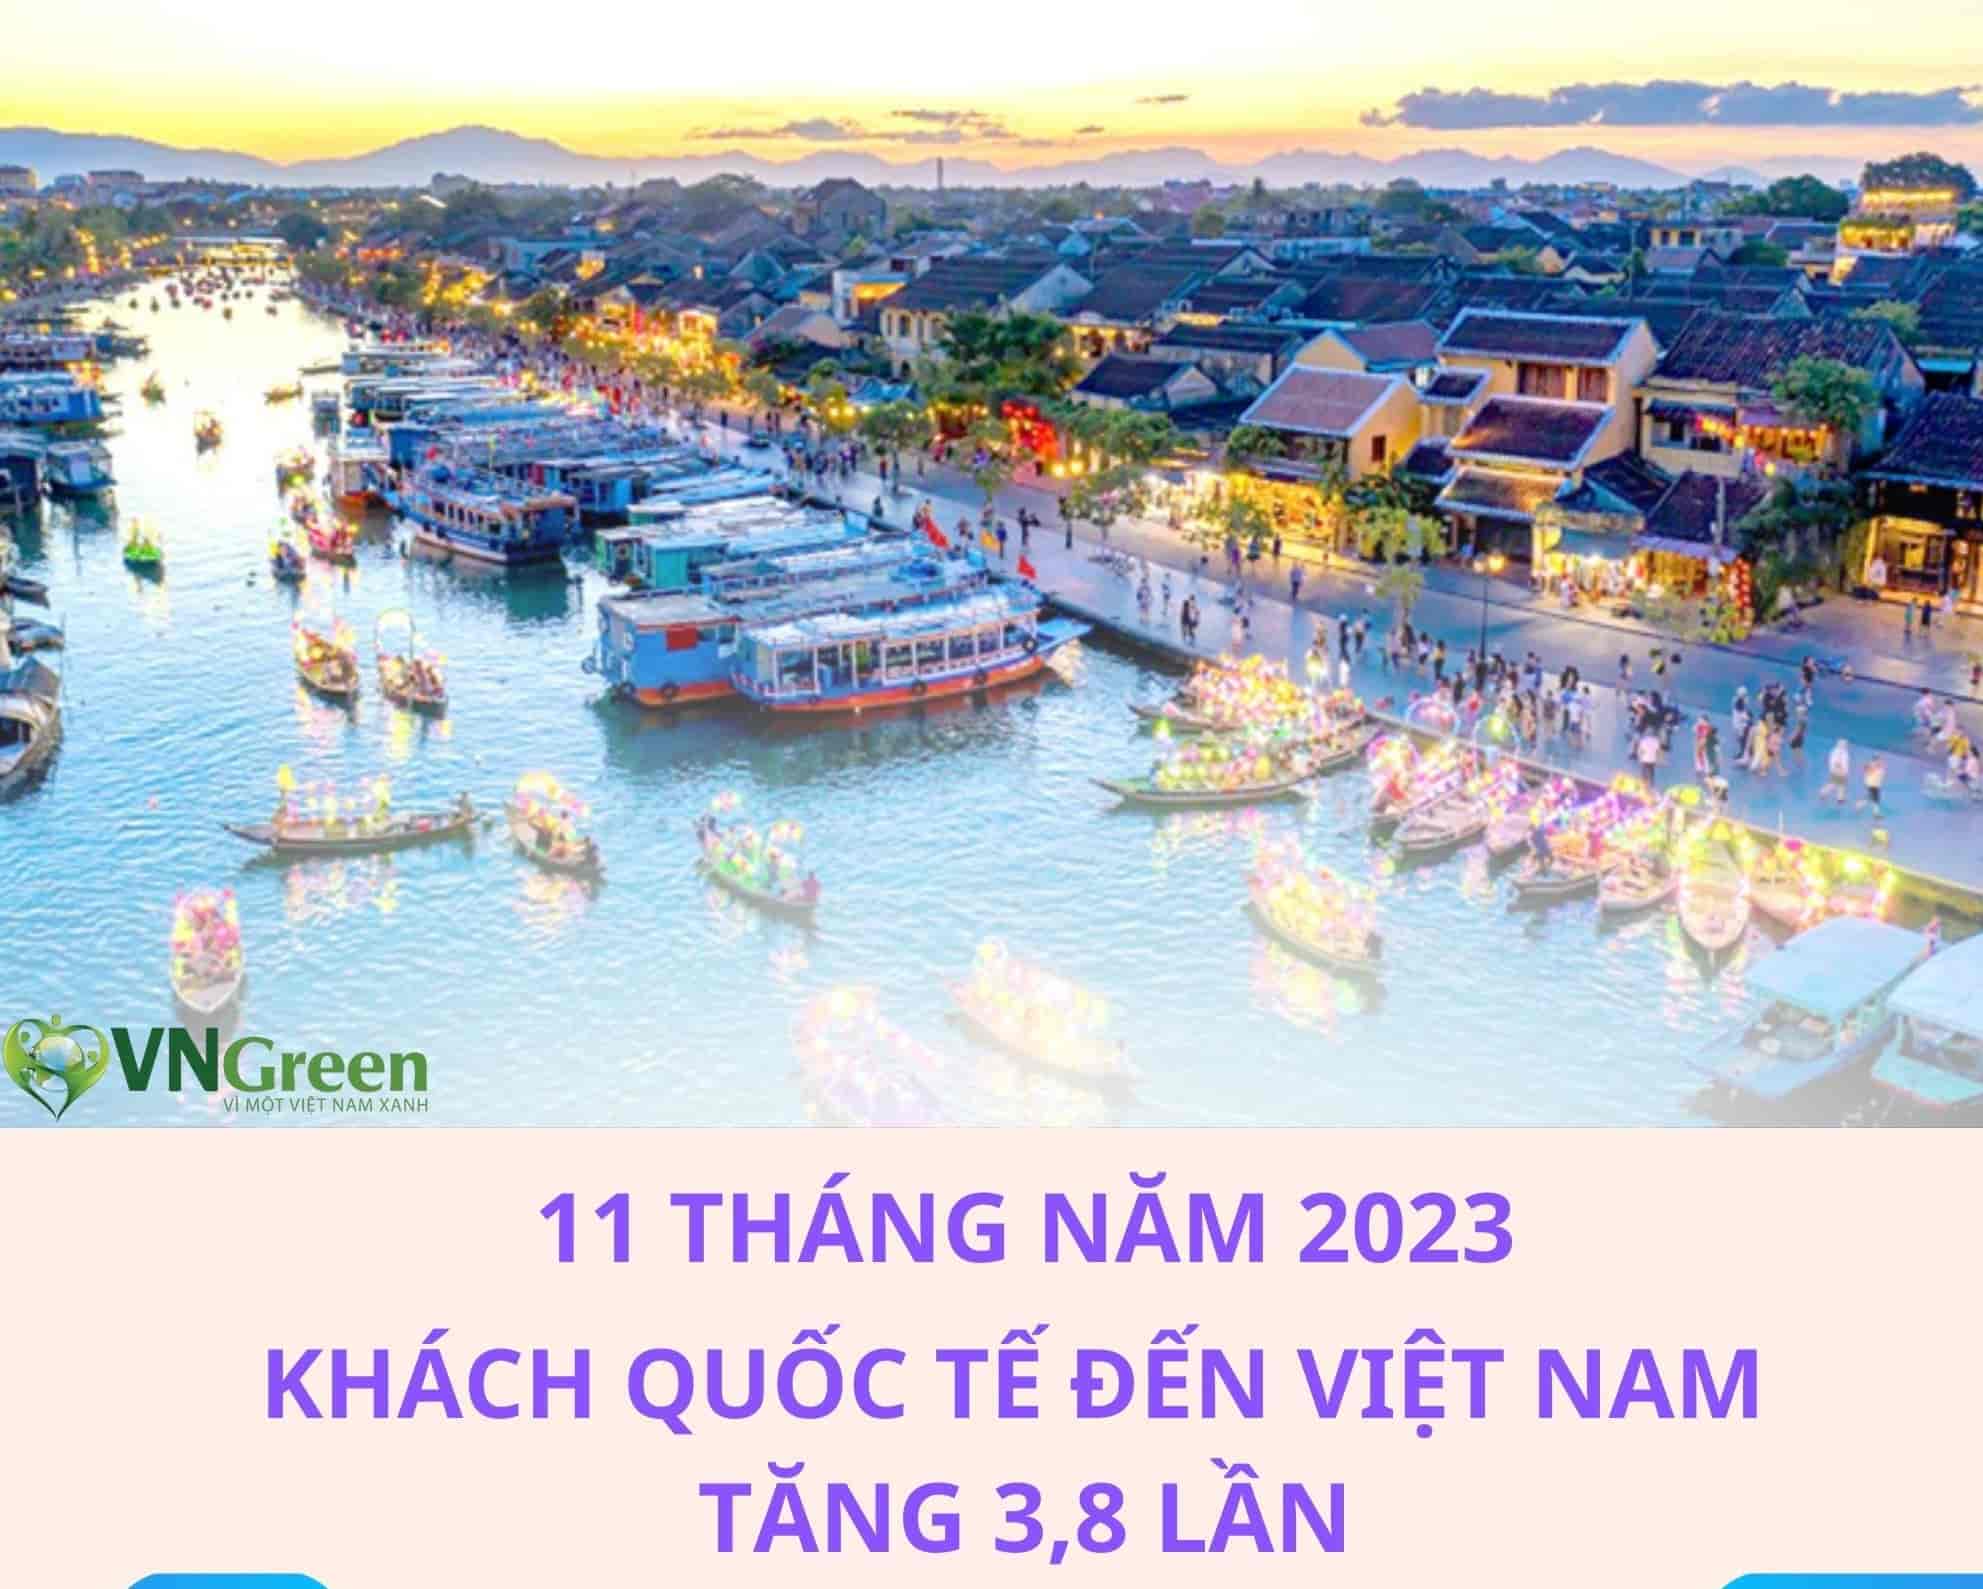 [Infographic]: 11 tháng năm 2023 khách quốc tế đến Việt Nam tăng 3,8 lần